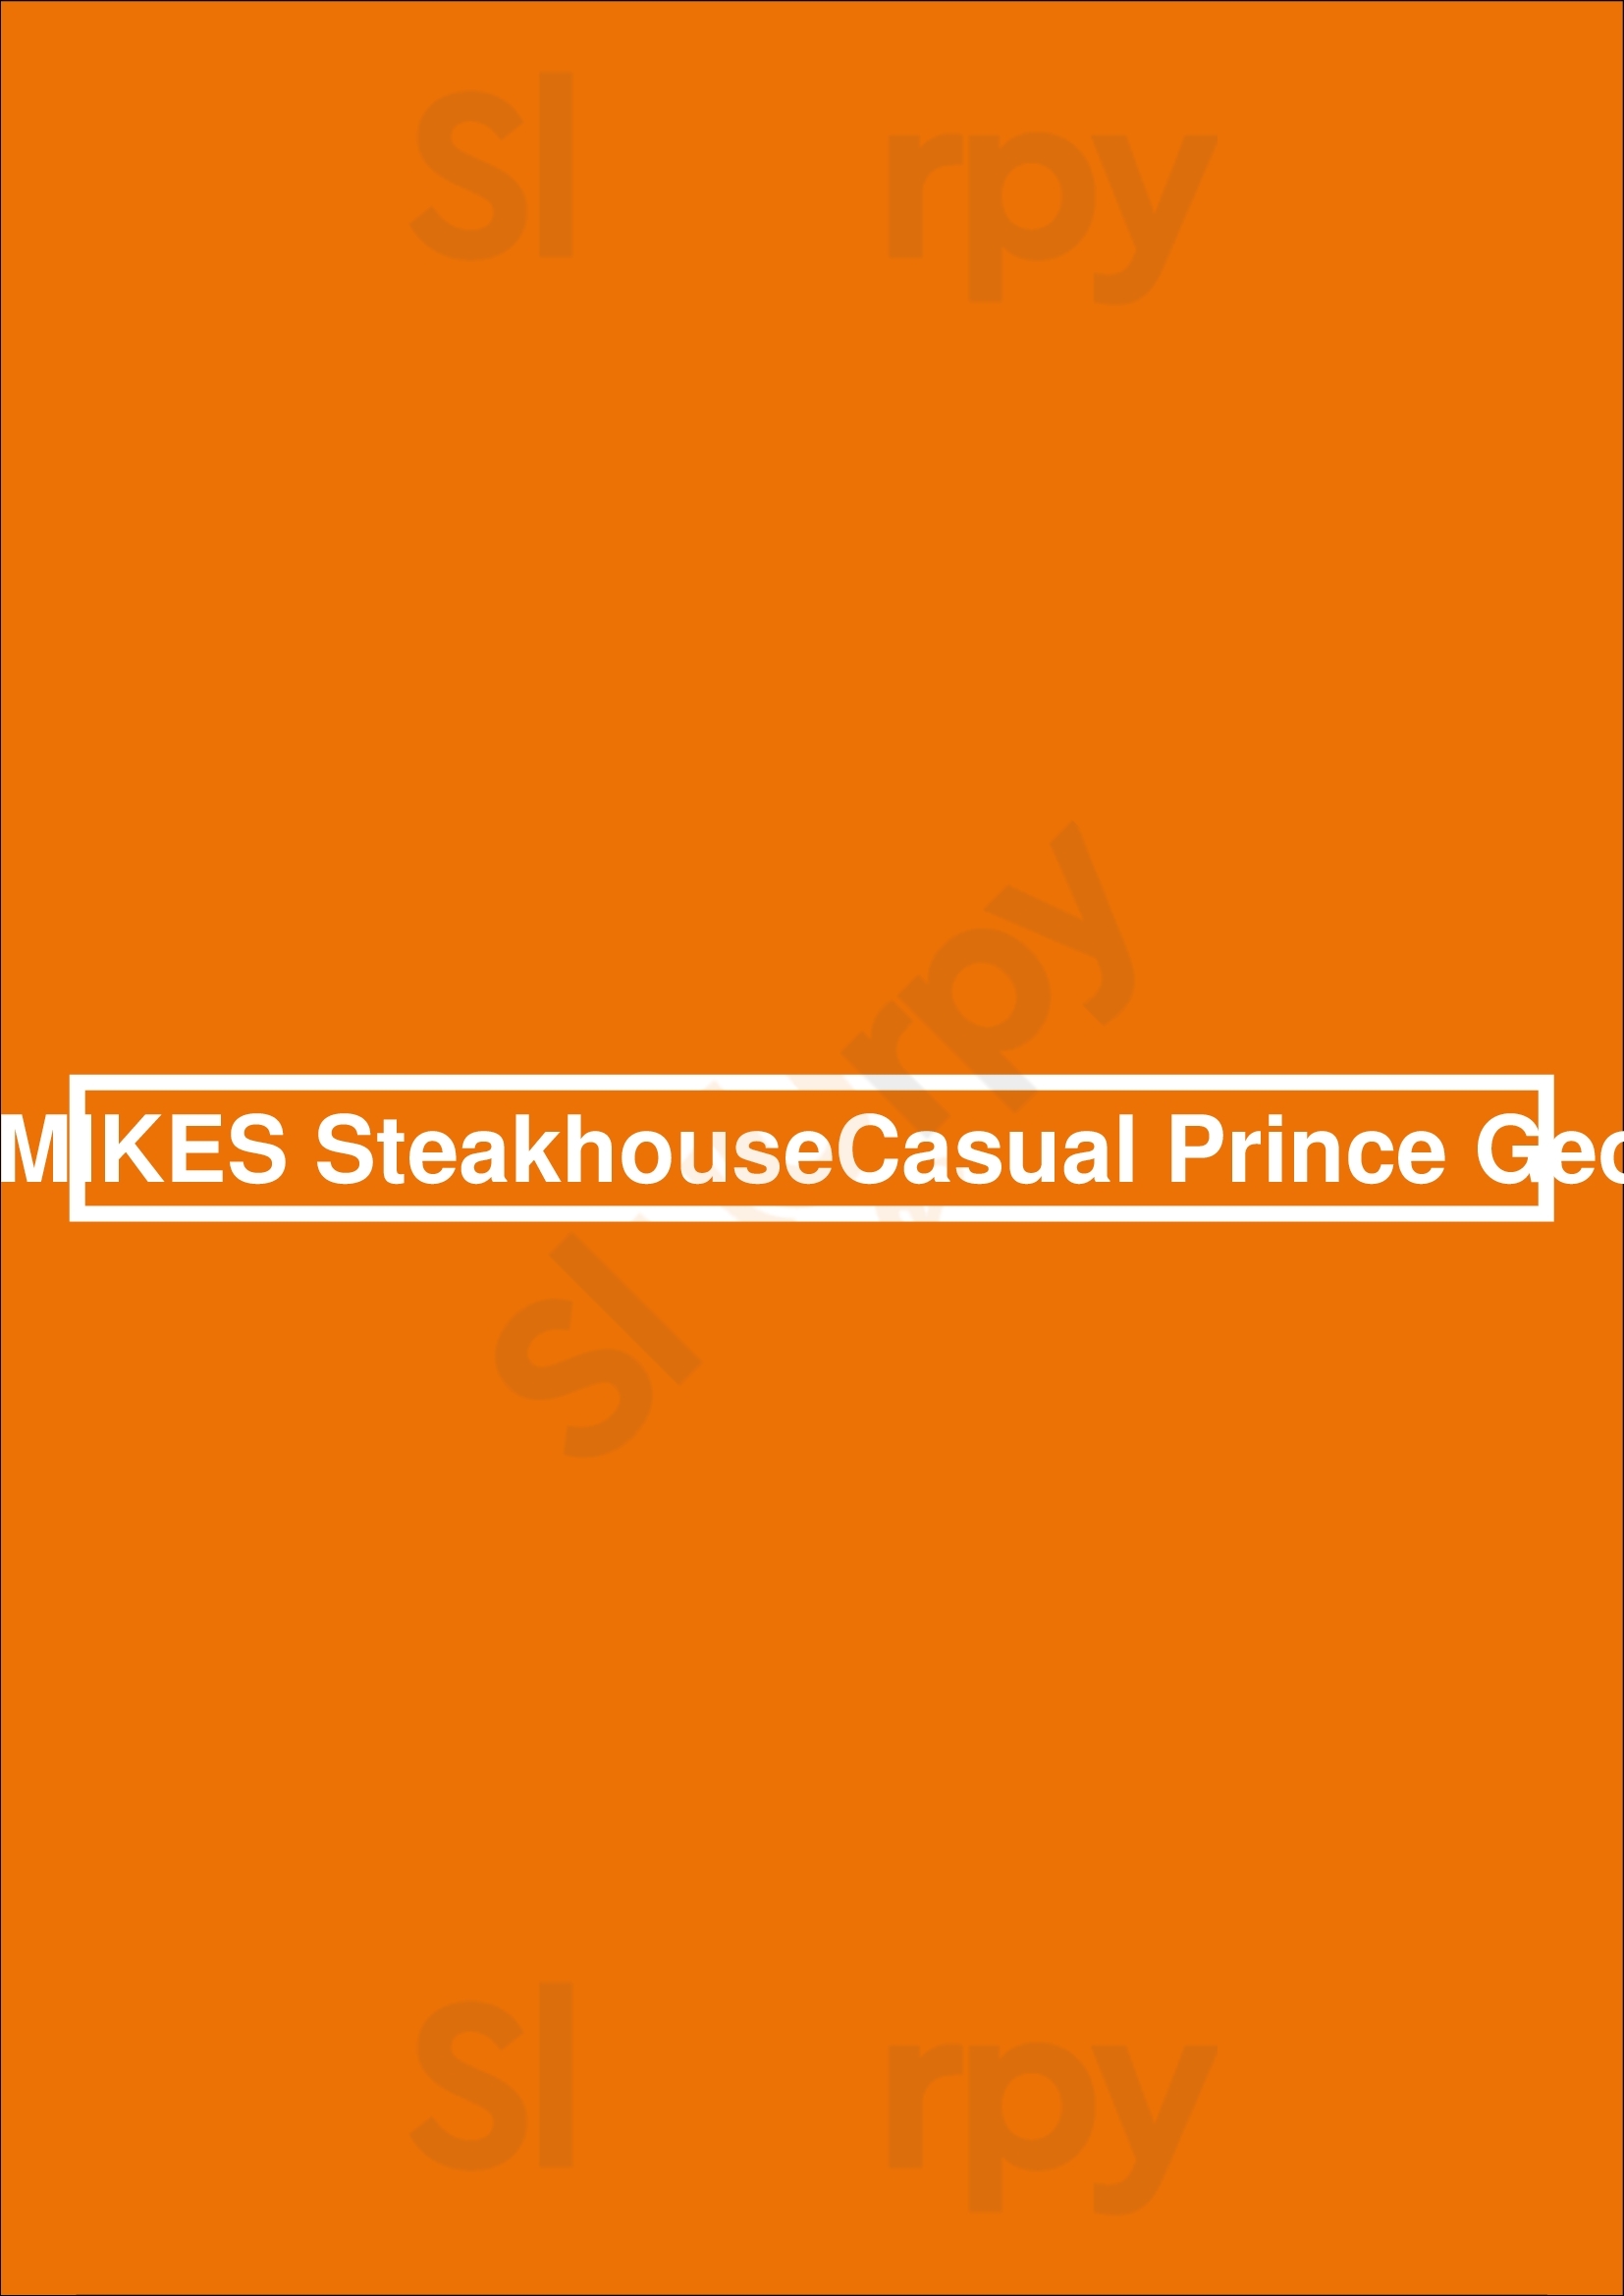 Mr Mikes Steakhousecasual Prince George Prince George Menu - 1